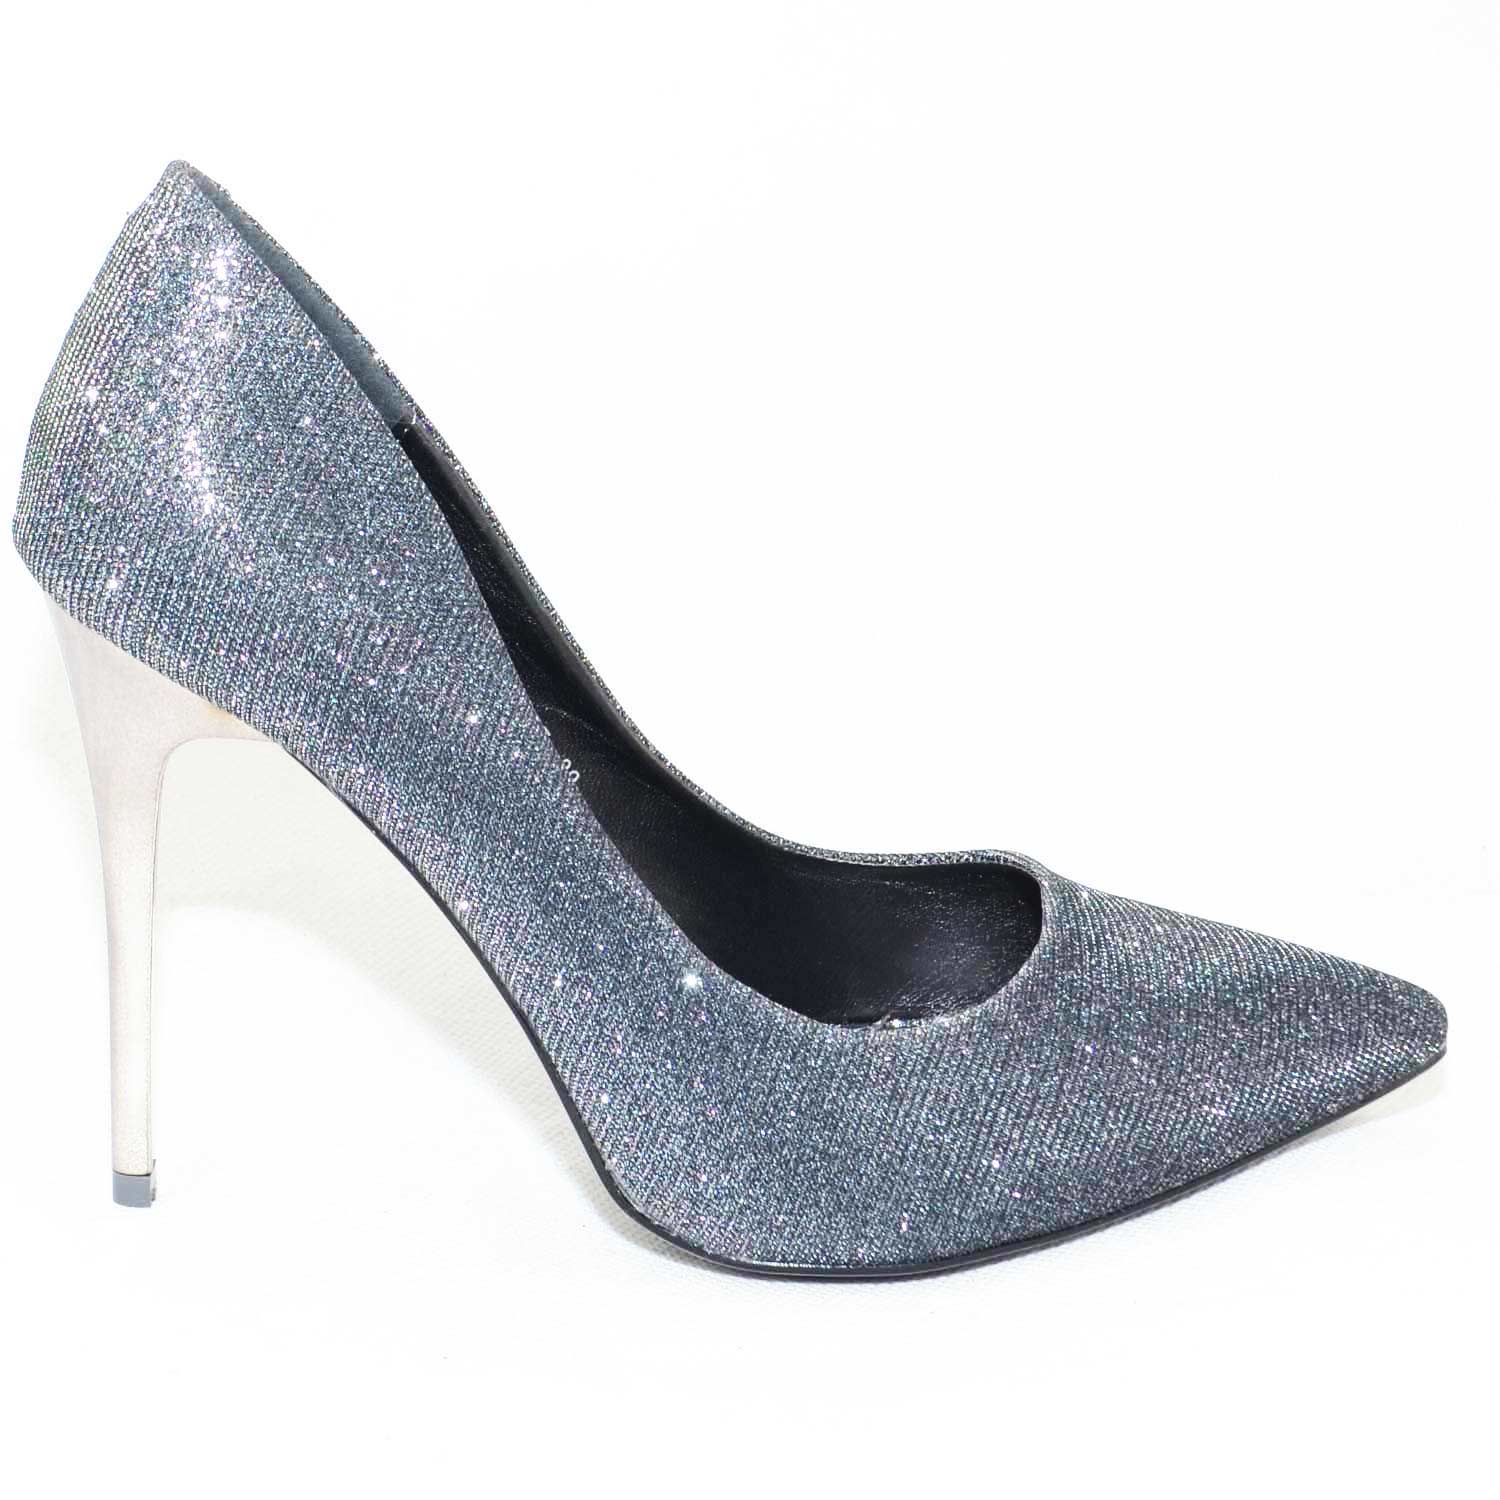 scarpe donna eleganti moda a punta in tessuto glitterato grigio tacco a  spillo l | eBay